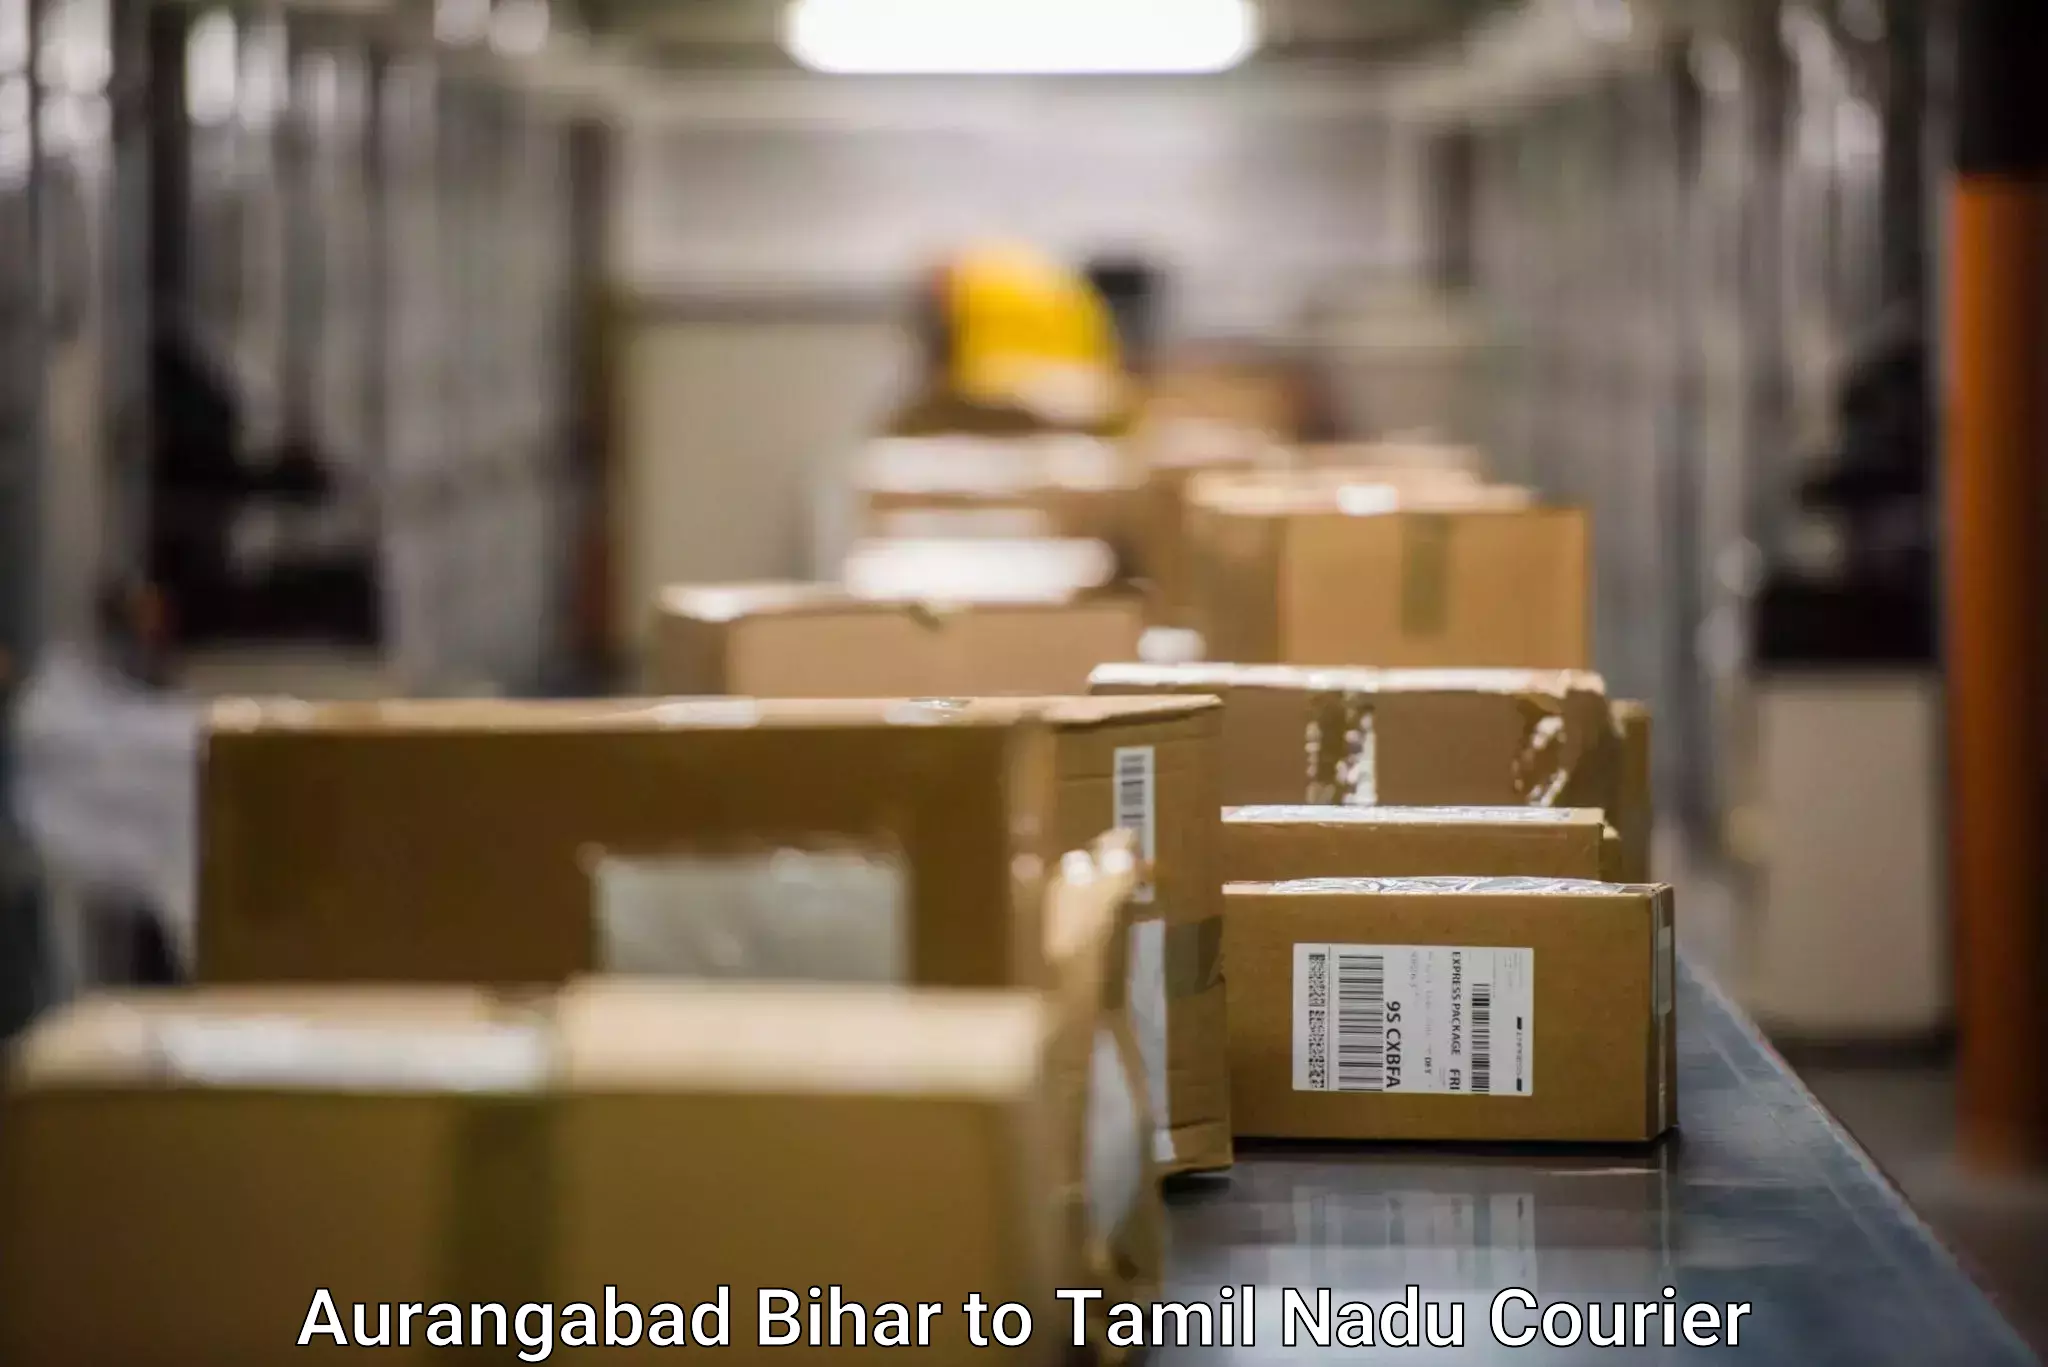 Cargo delivery service Aurangabad Bihar to Palladam